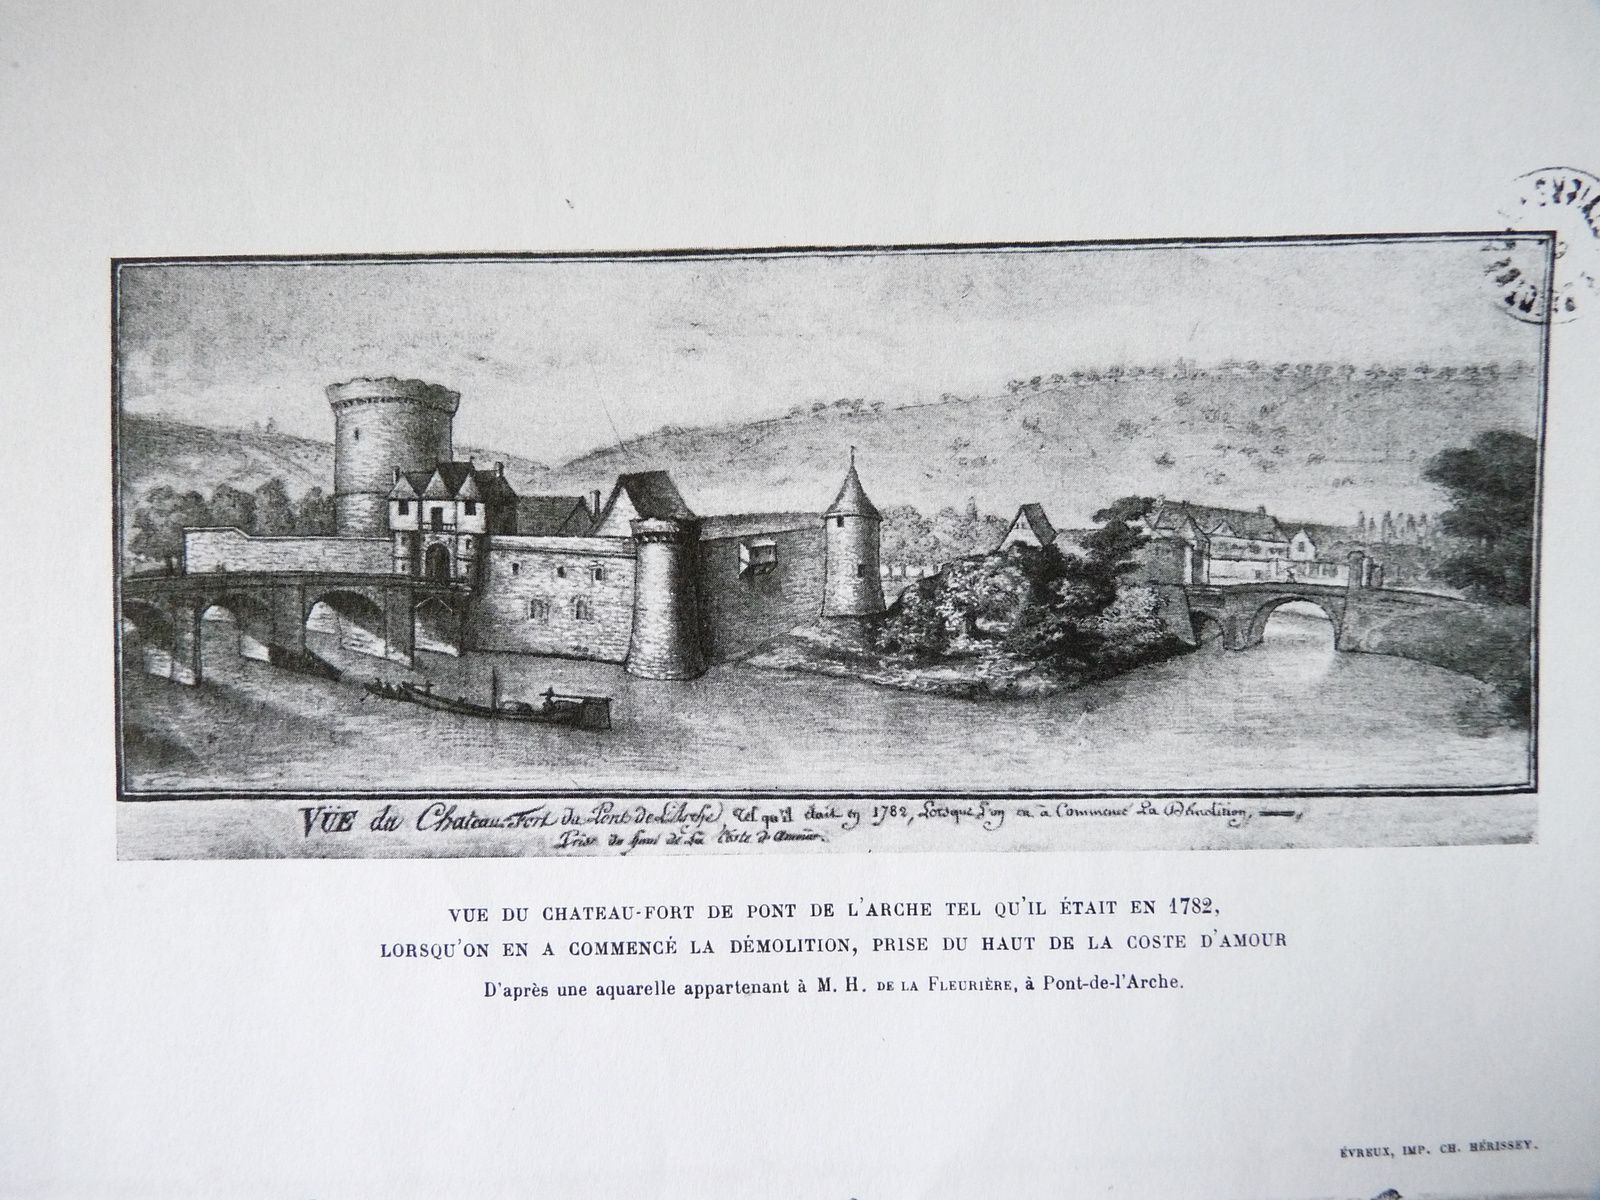 La coste d'amour nommé dans un dessin de 1782 représentant le fort de Limaie, c'est-à-dire le fort situé de l'autre côté du pont de Pont-de-l'Arche. Le pont actuel touche la berge d'Igoville à l'endroit de la tour d'angle figurant sur ce dessin reproduit dans un article de Léon Coutil intitulé "Le vieux château de Limaie et le vieux pont de Pont-de-l'Arche (Eure)" publié dans le Bulletin de la Société d'études diverses de Louviers, tome XVI, 1921-1922. 